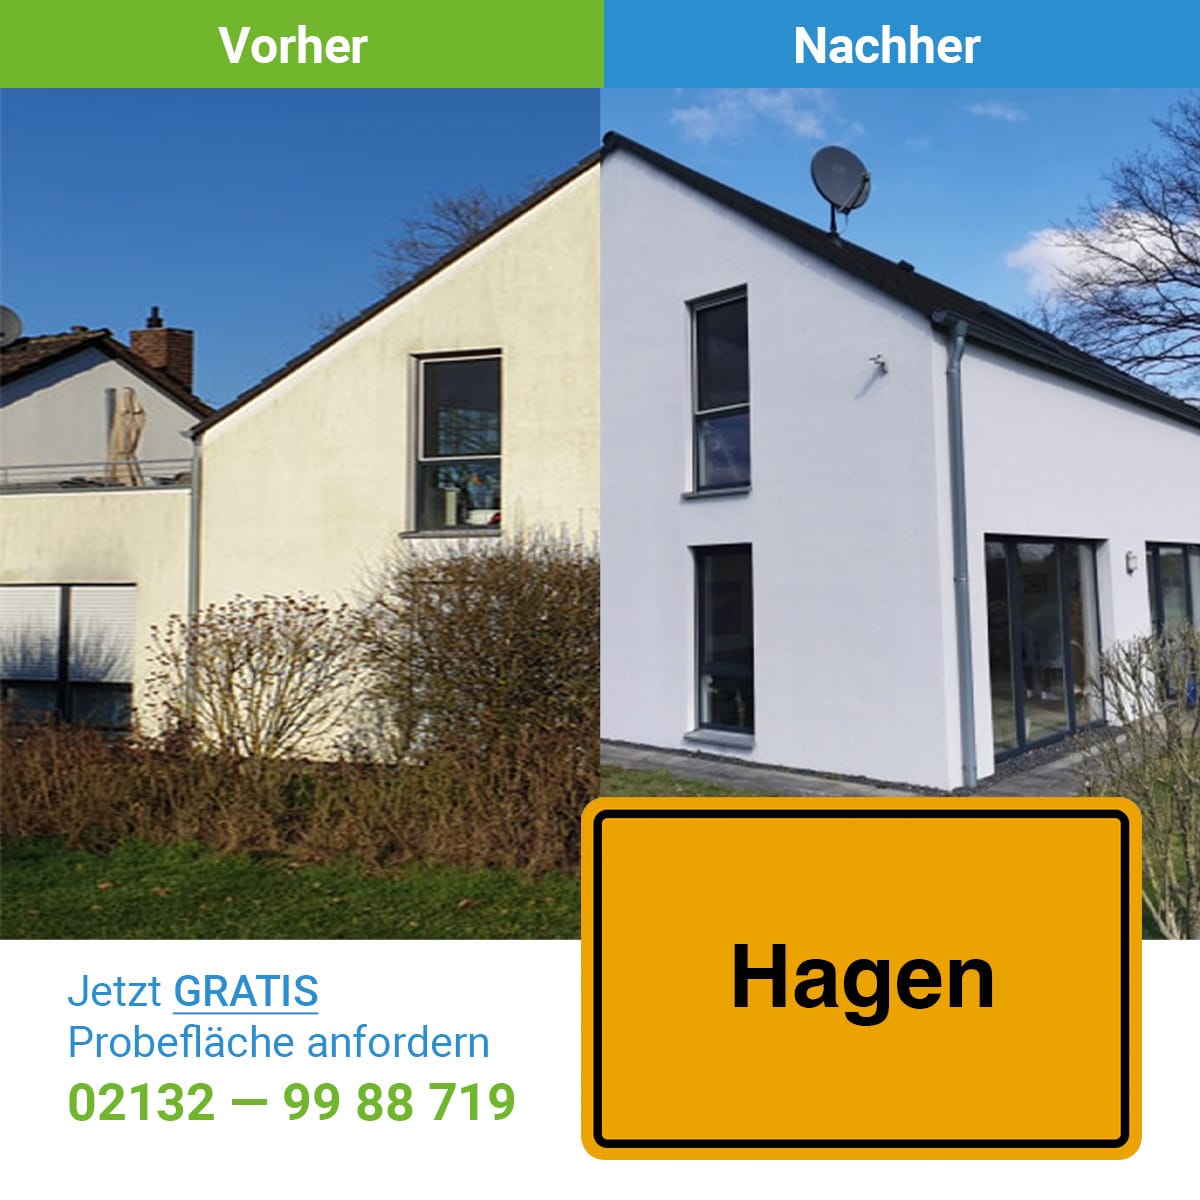 Fassadenreinigung in hagen, SC SystemCare GmbH, ein Vorher-Nachher Bild mit dem Ergeniss der Reinigung -professionelle Fassadenreinigung